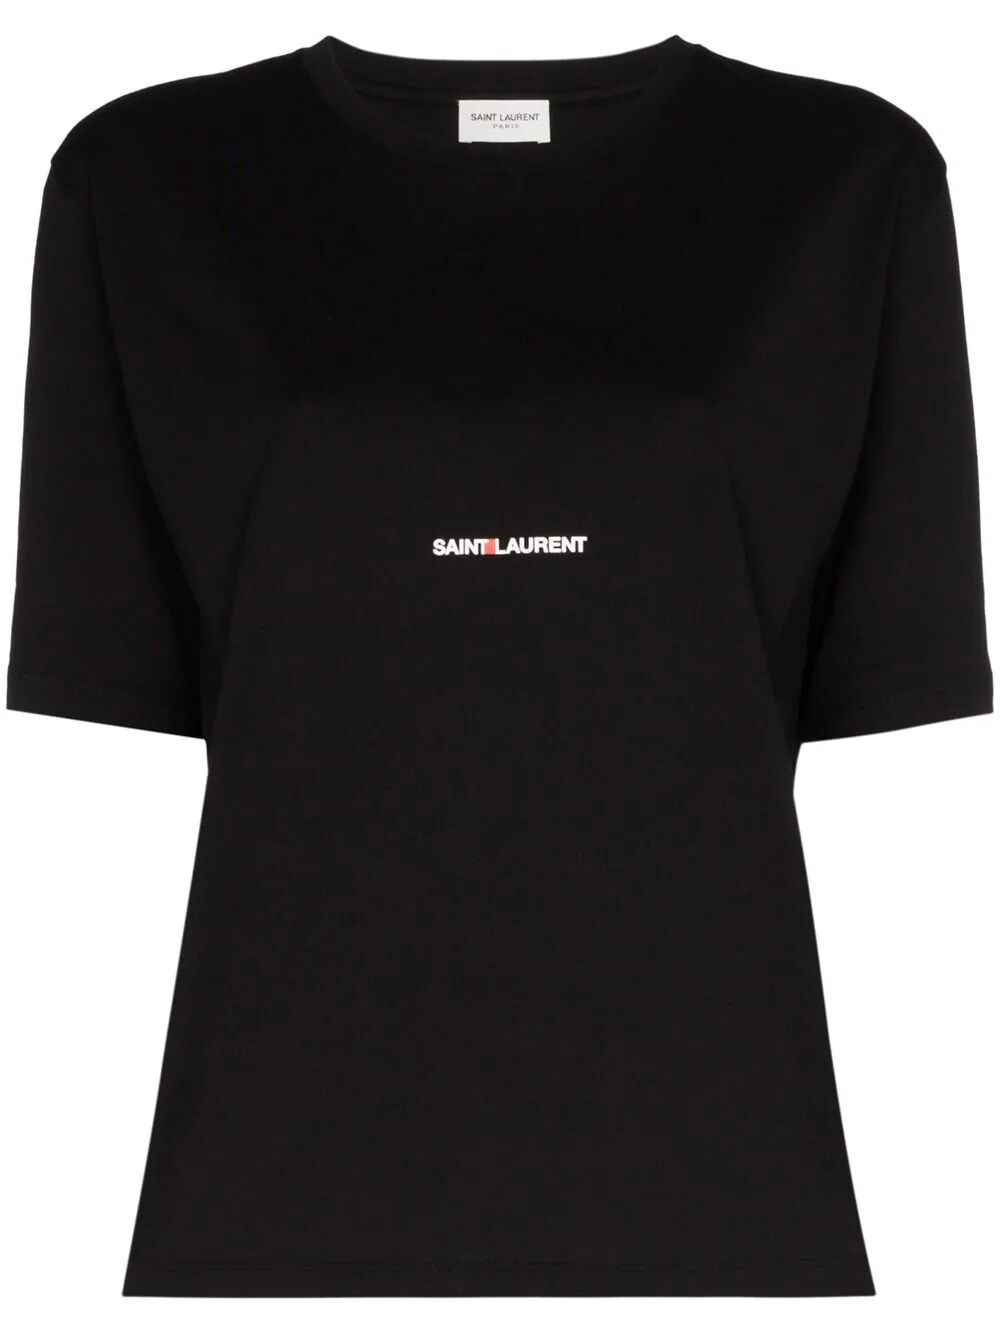 Saint laurent t-shirt - 1